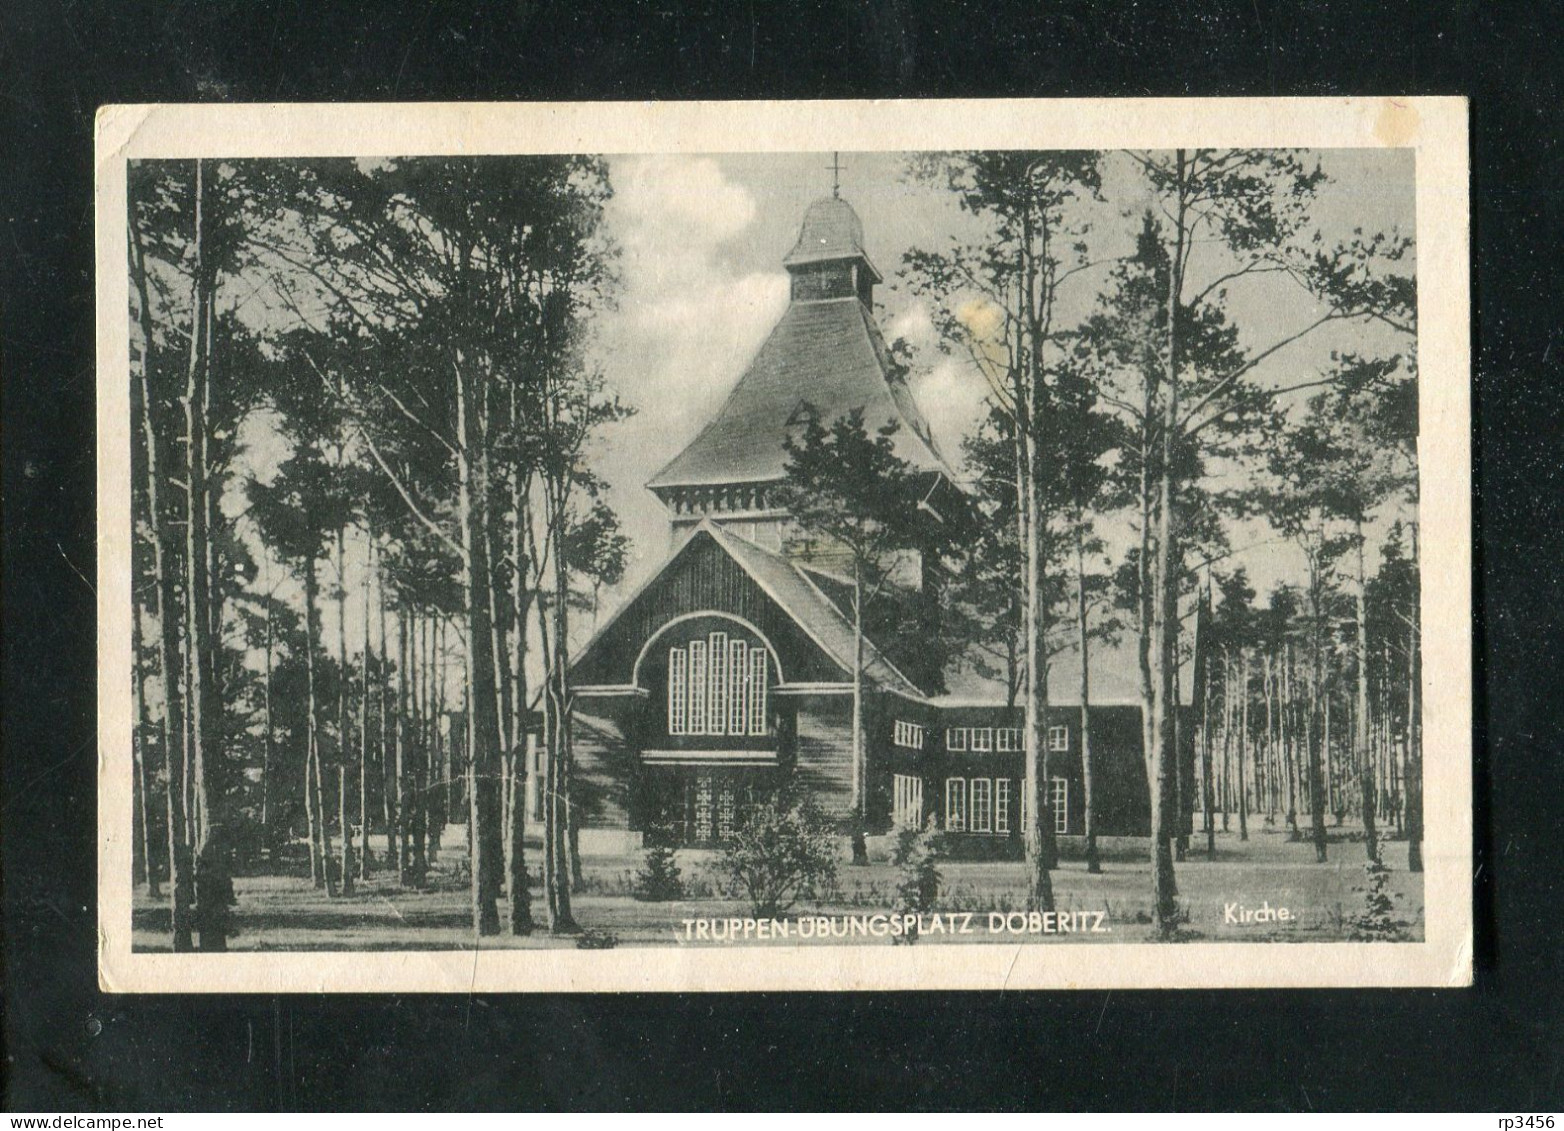 "TRUPPENUEBUNGSPLATZ DOEBERITZ" 1944, AK "Kirche" (A325) - Dallgow-Döberitz